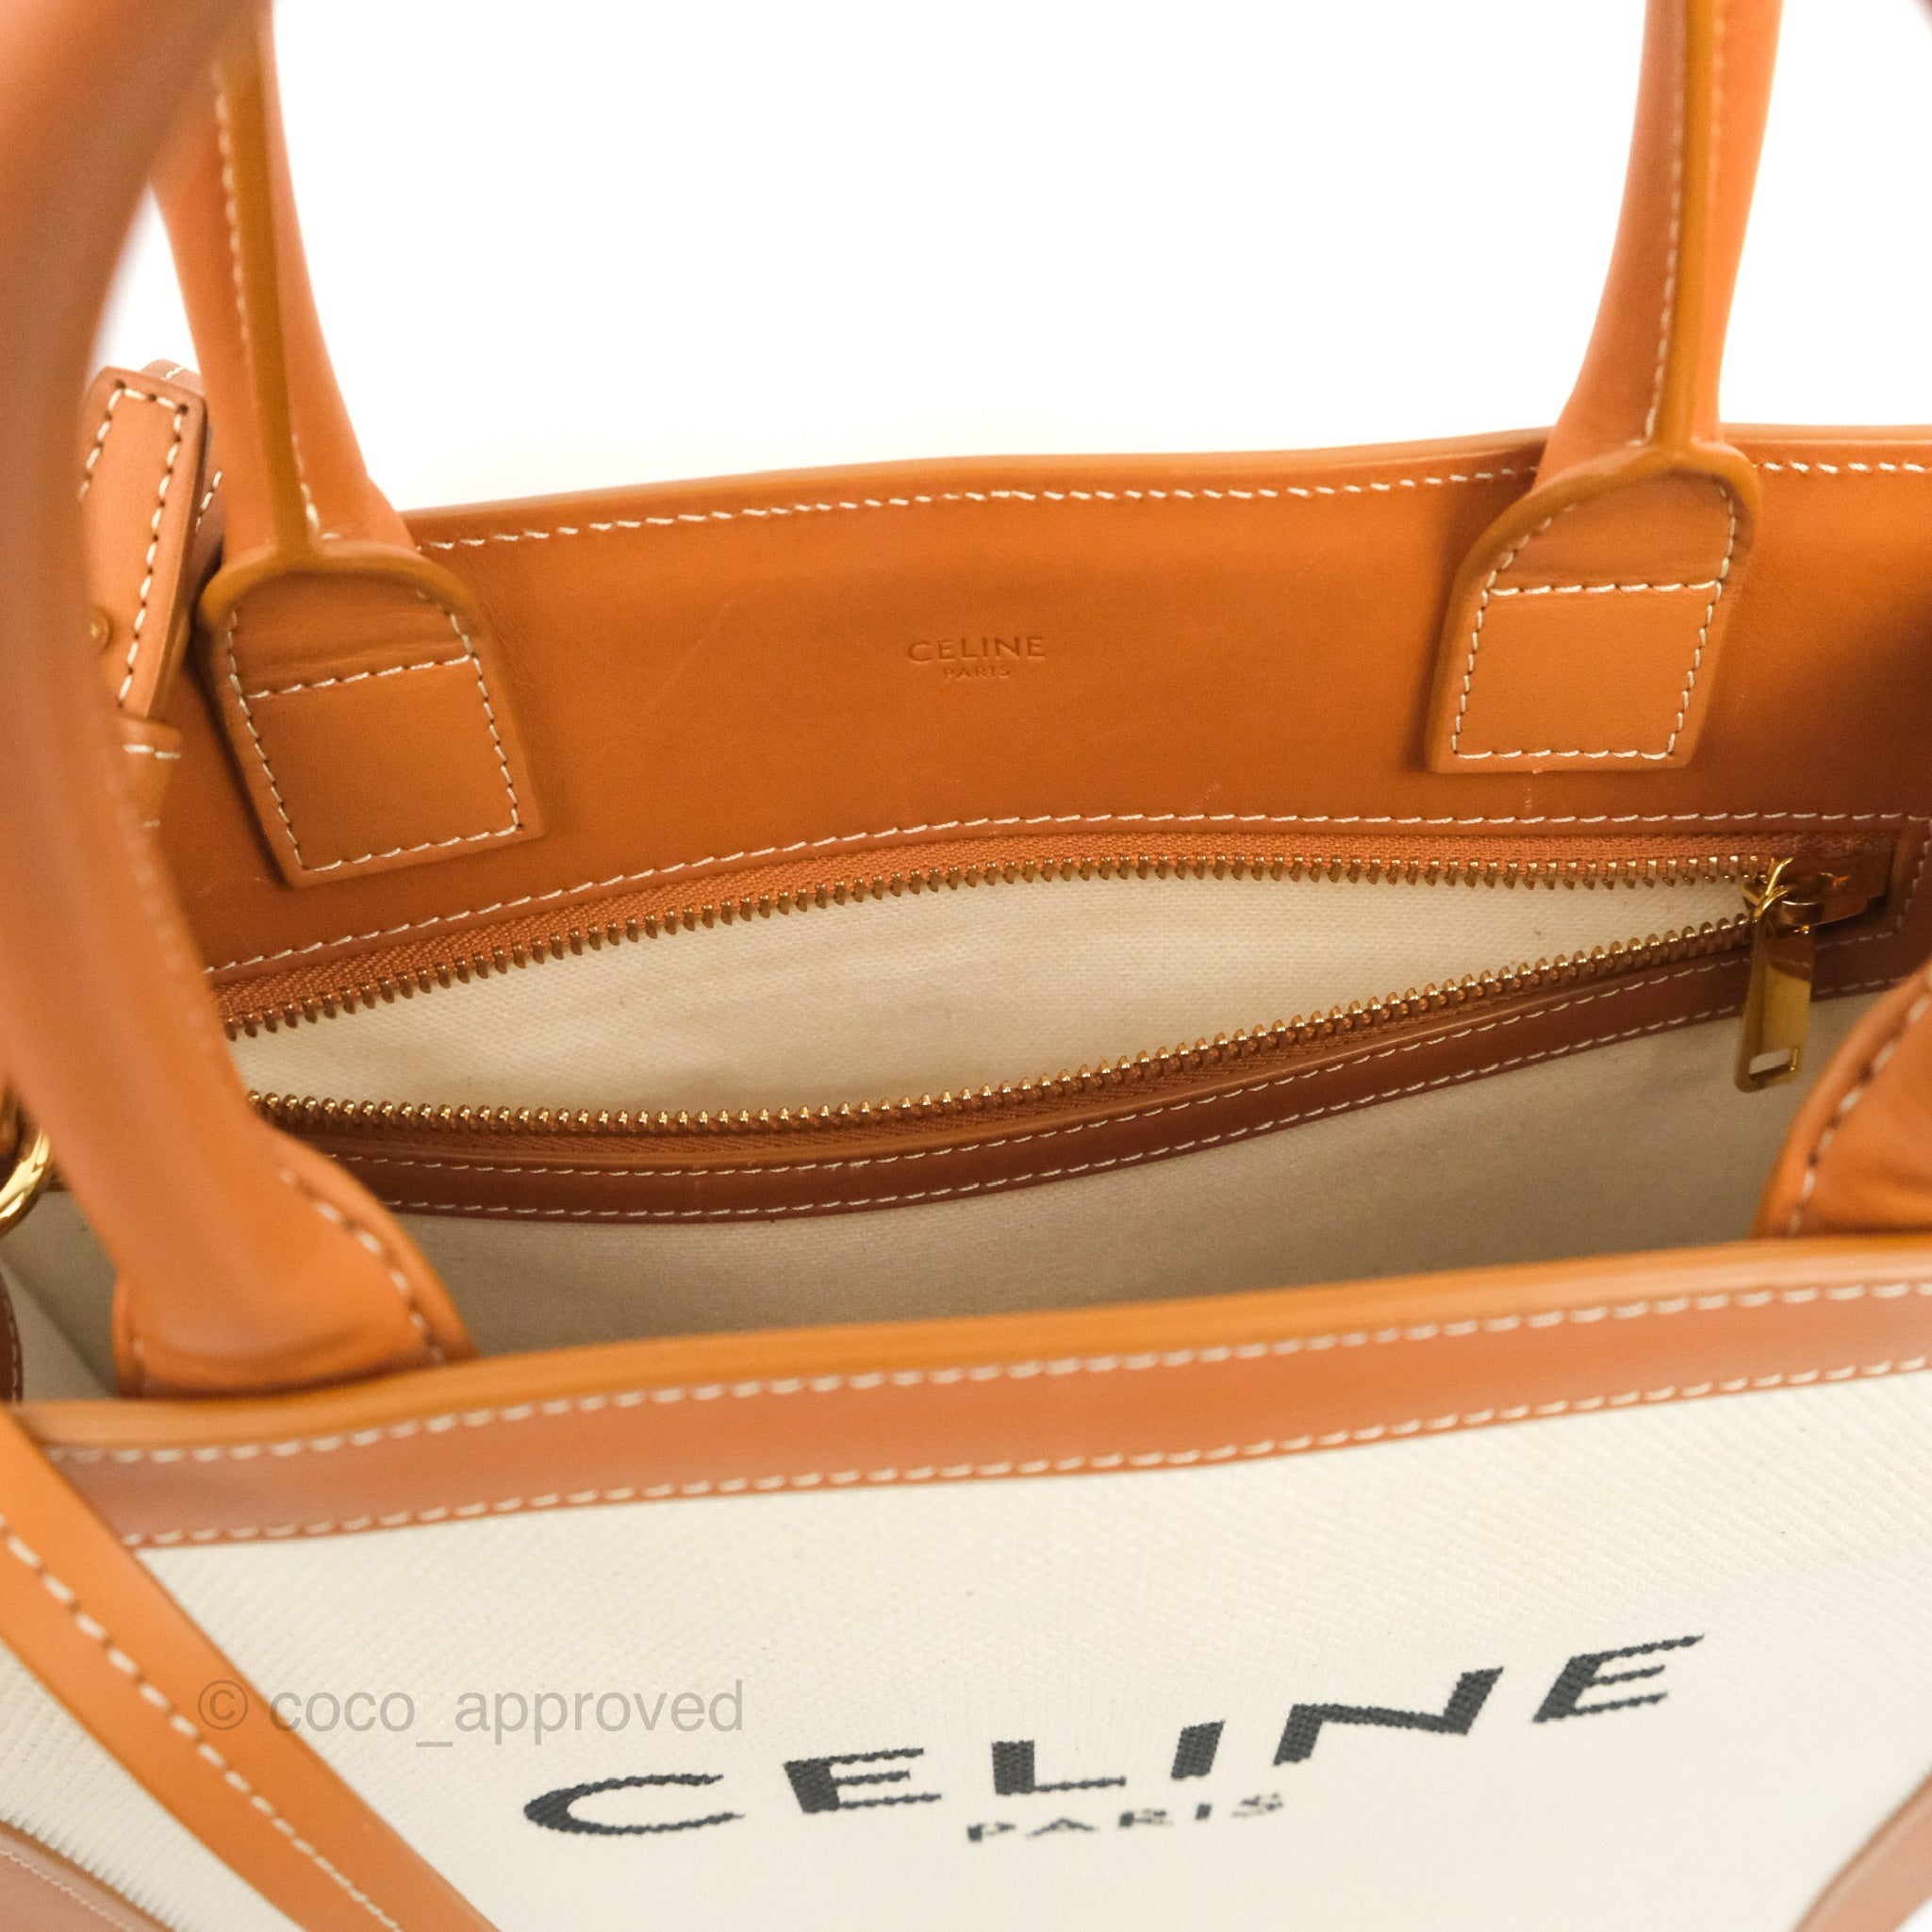 Celine Small Vertical Cabas Canvas Tote - Neutrals Totes, Handbags